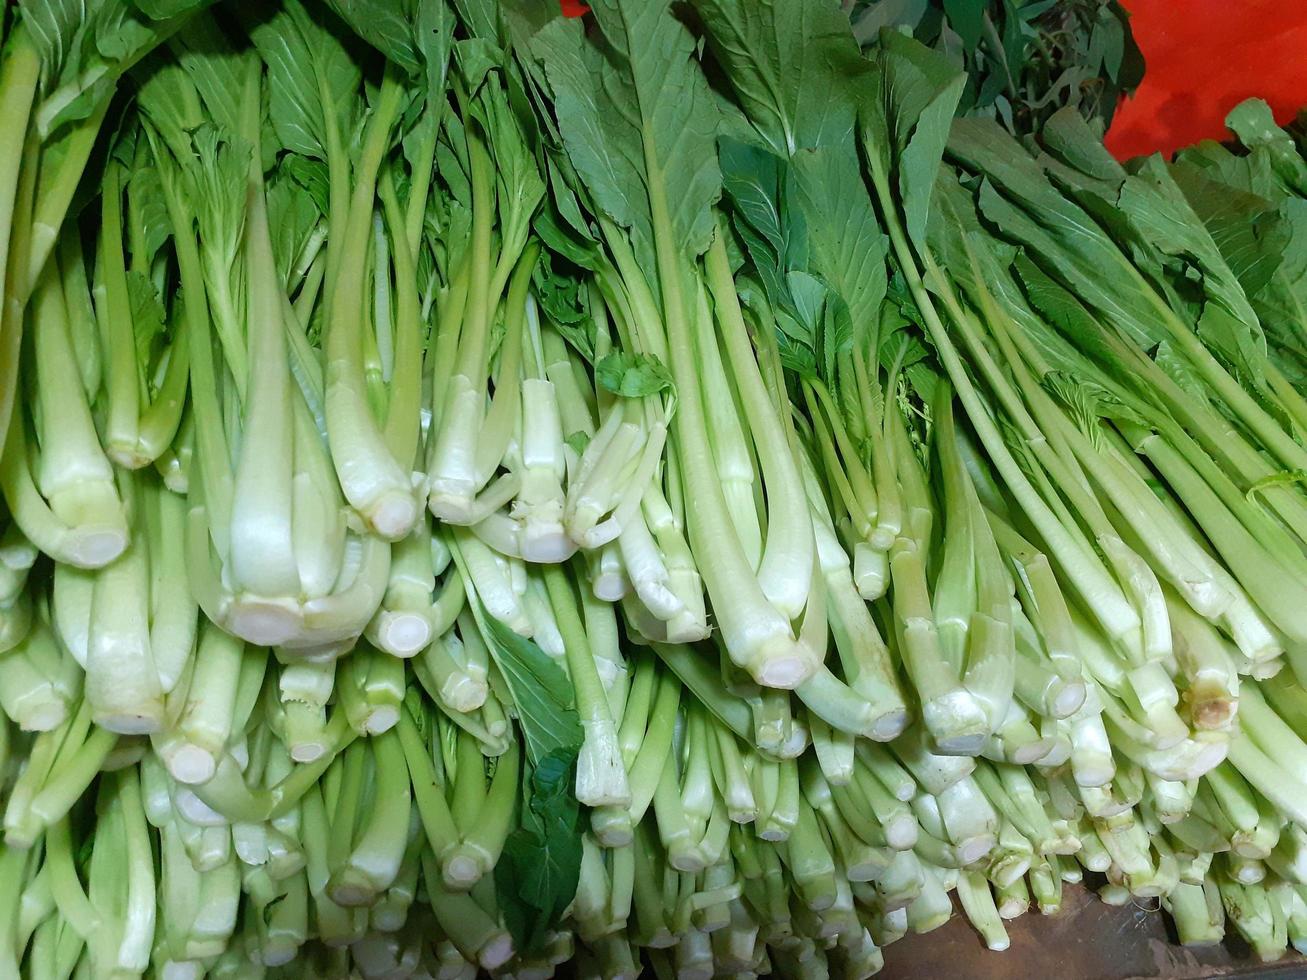 mostaza verduras son pulcramente arreglado en el estantería de un vegetal tienda. foto